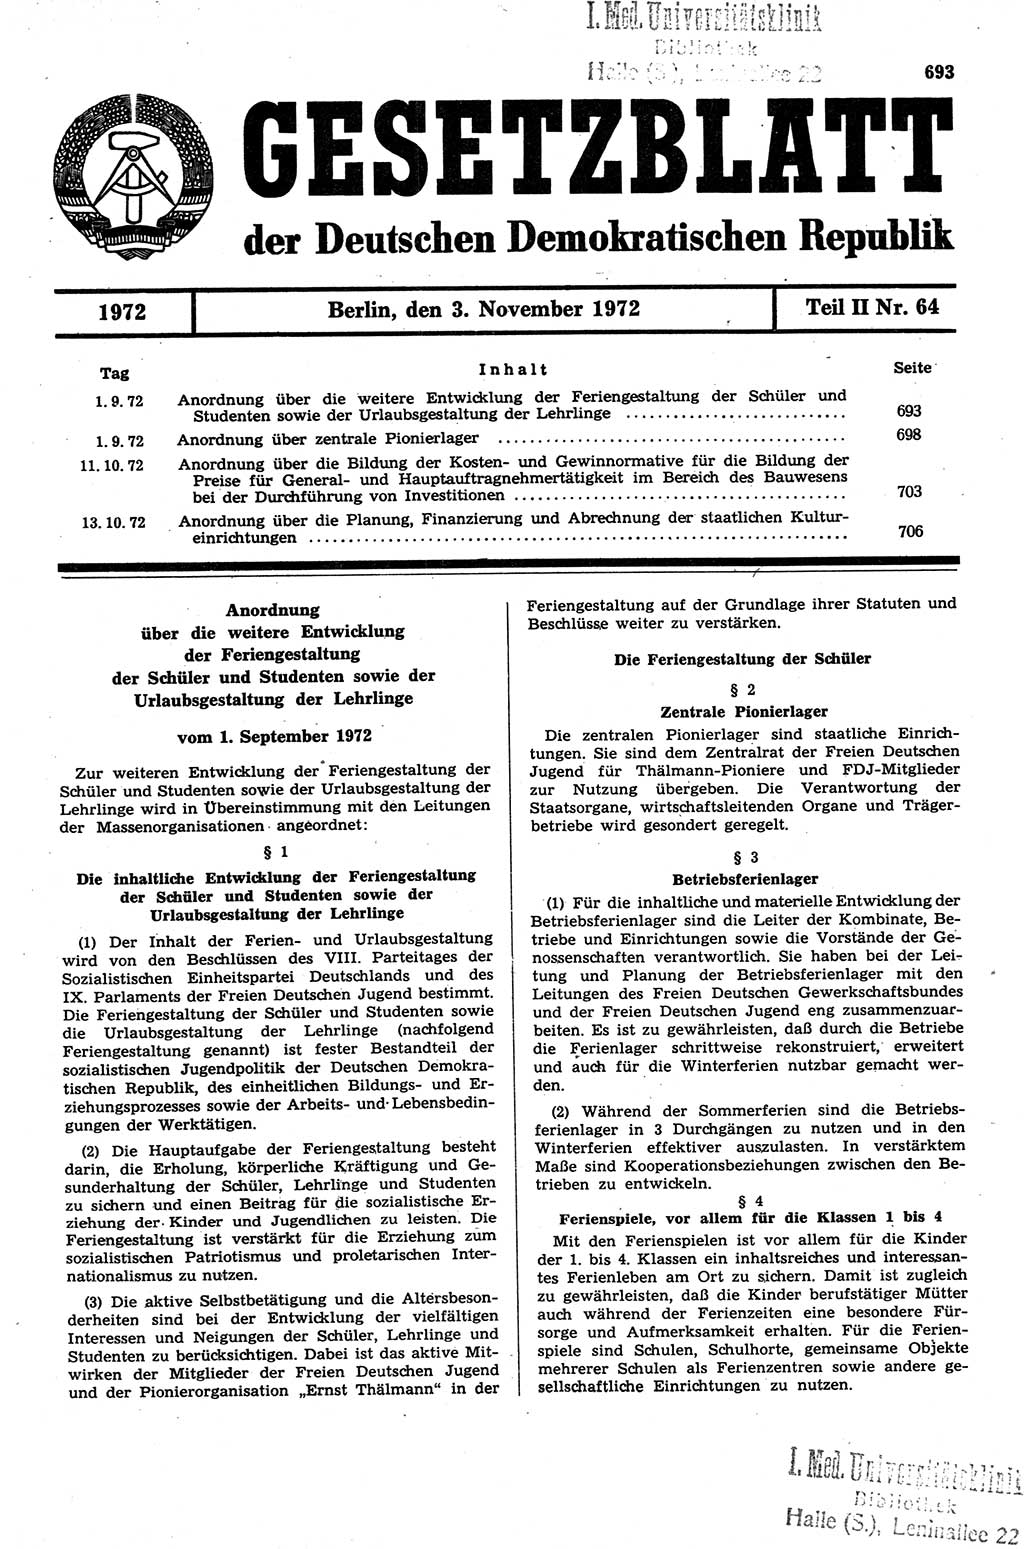 Gesetzblatt (GBl.) der Deutschen Demokratischen Republik (DDR) Teil ⅠⅠ 1972, Seite 693 (GBl. DDR ⅠⅠ 1972, S. 693)